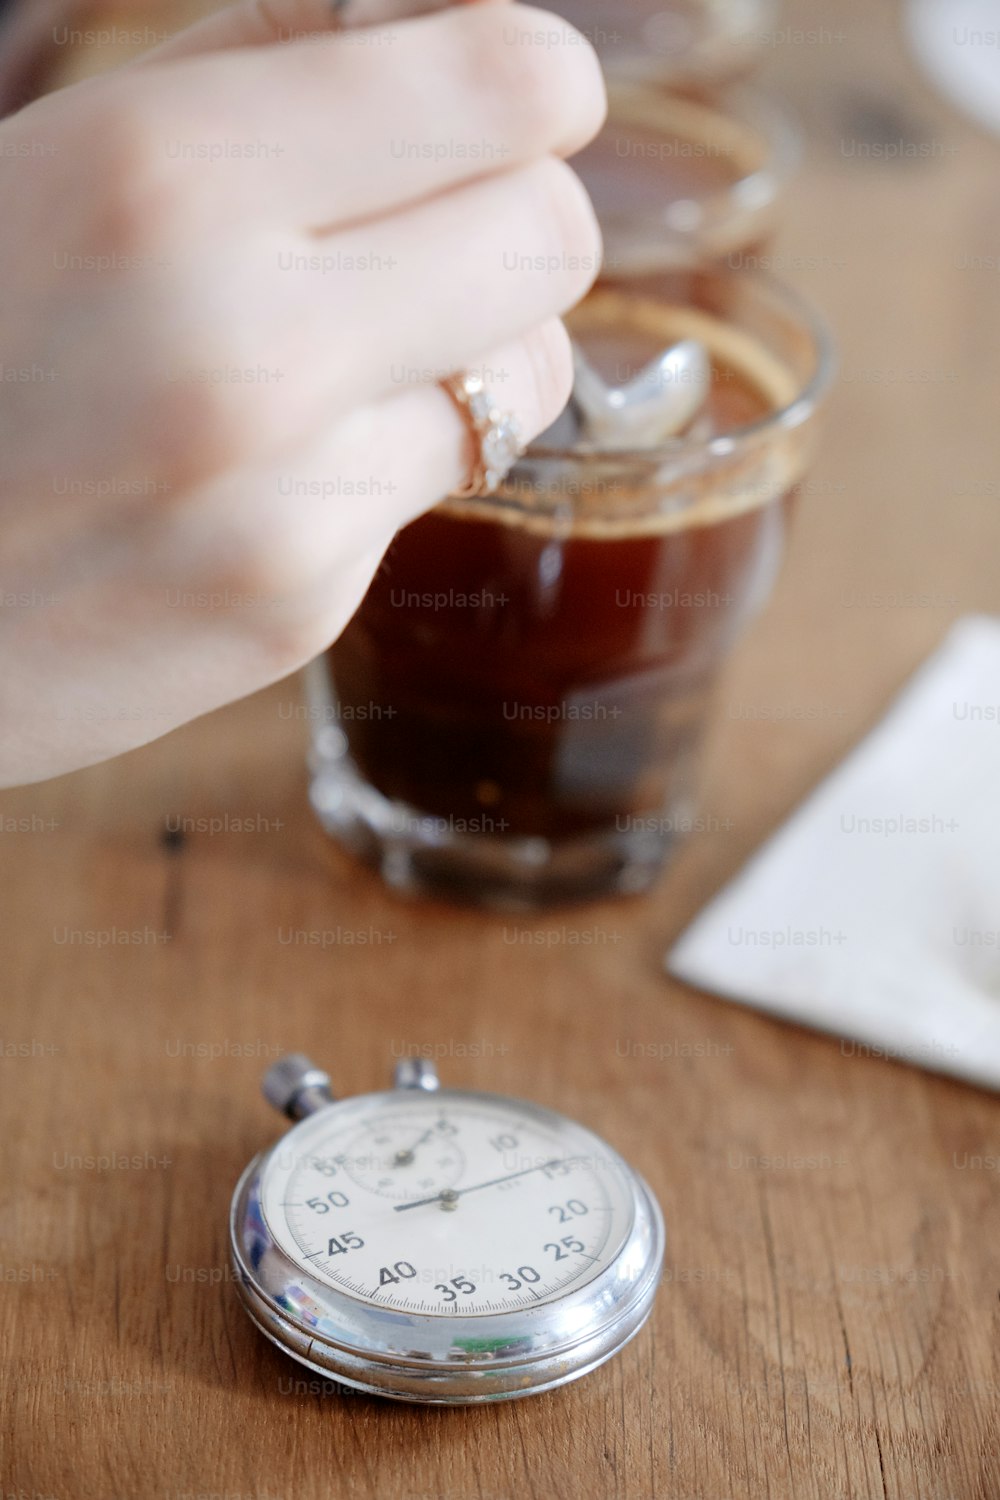 Primer plano de las manos del hombre probando café recién hecho en taza de vidrio, usando cuchara, examinando el sabor y el sabor del café en la prueba de cata de café para barosta